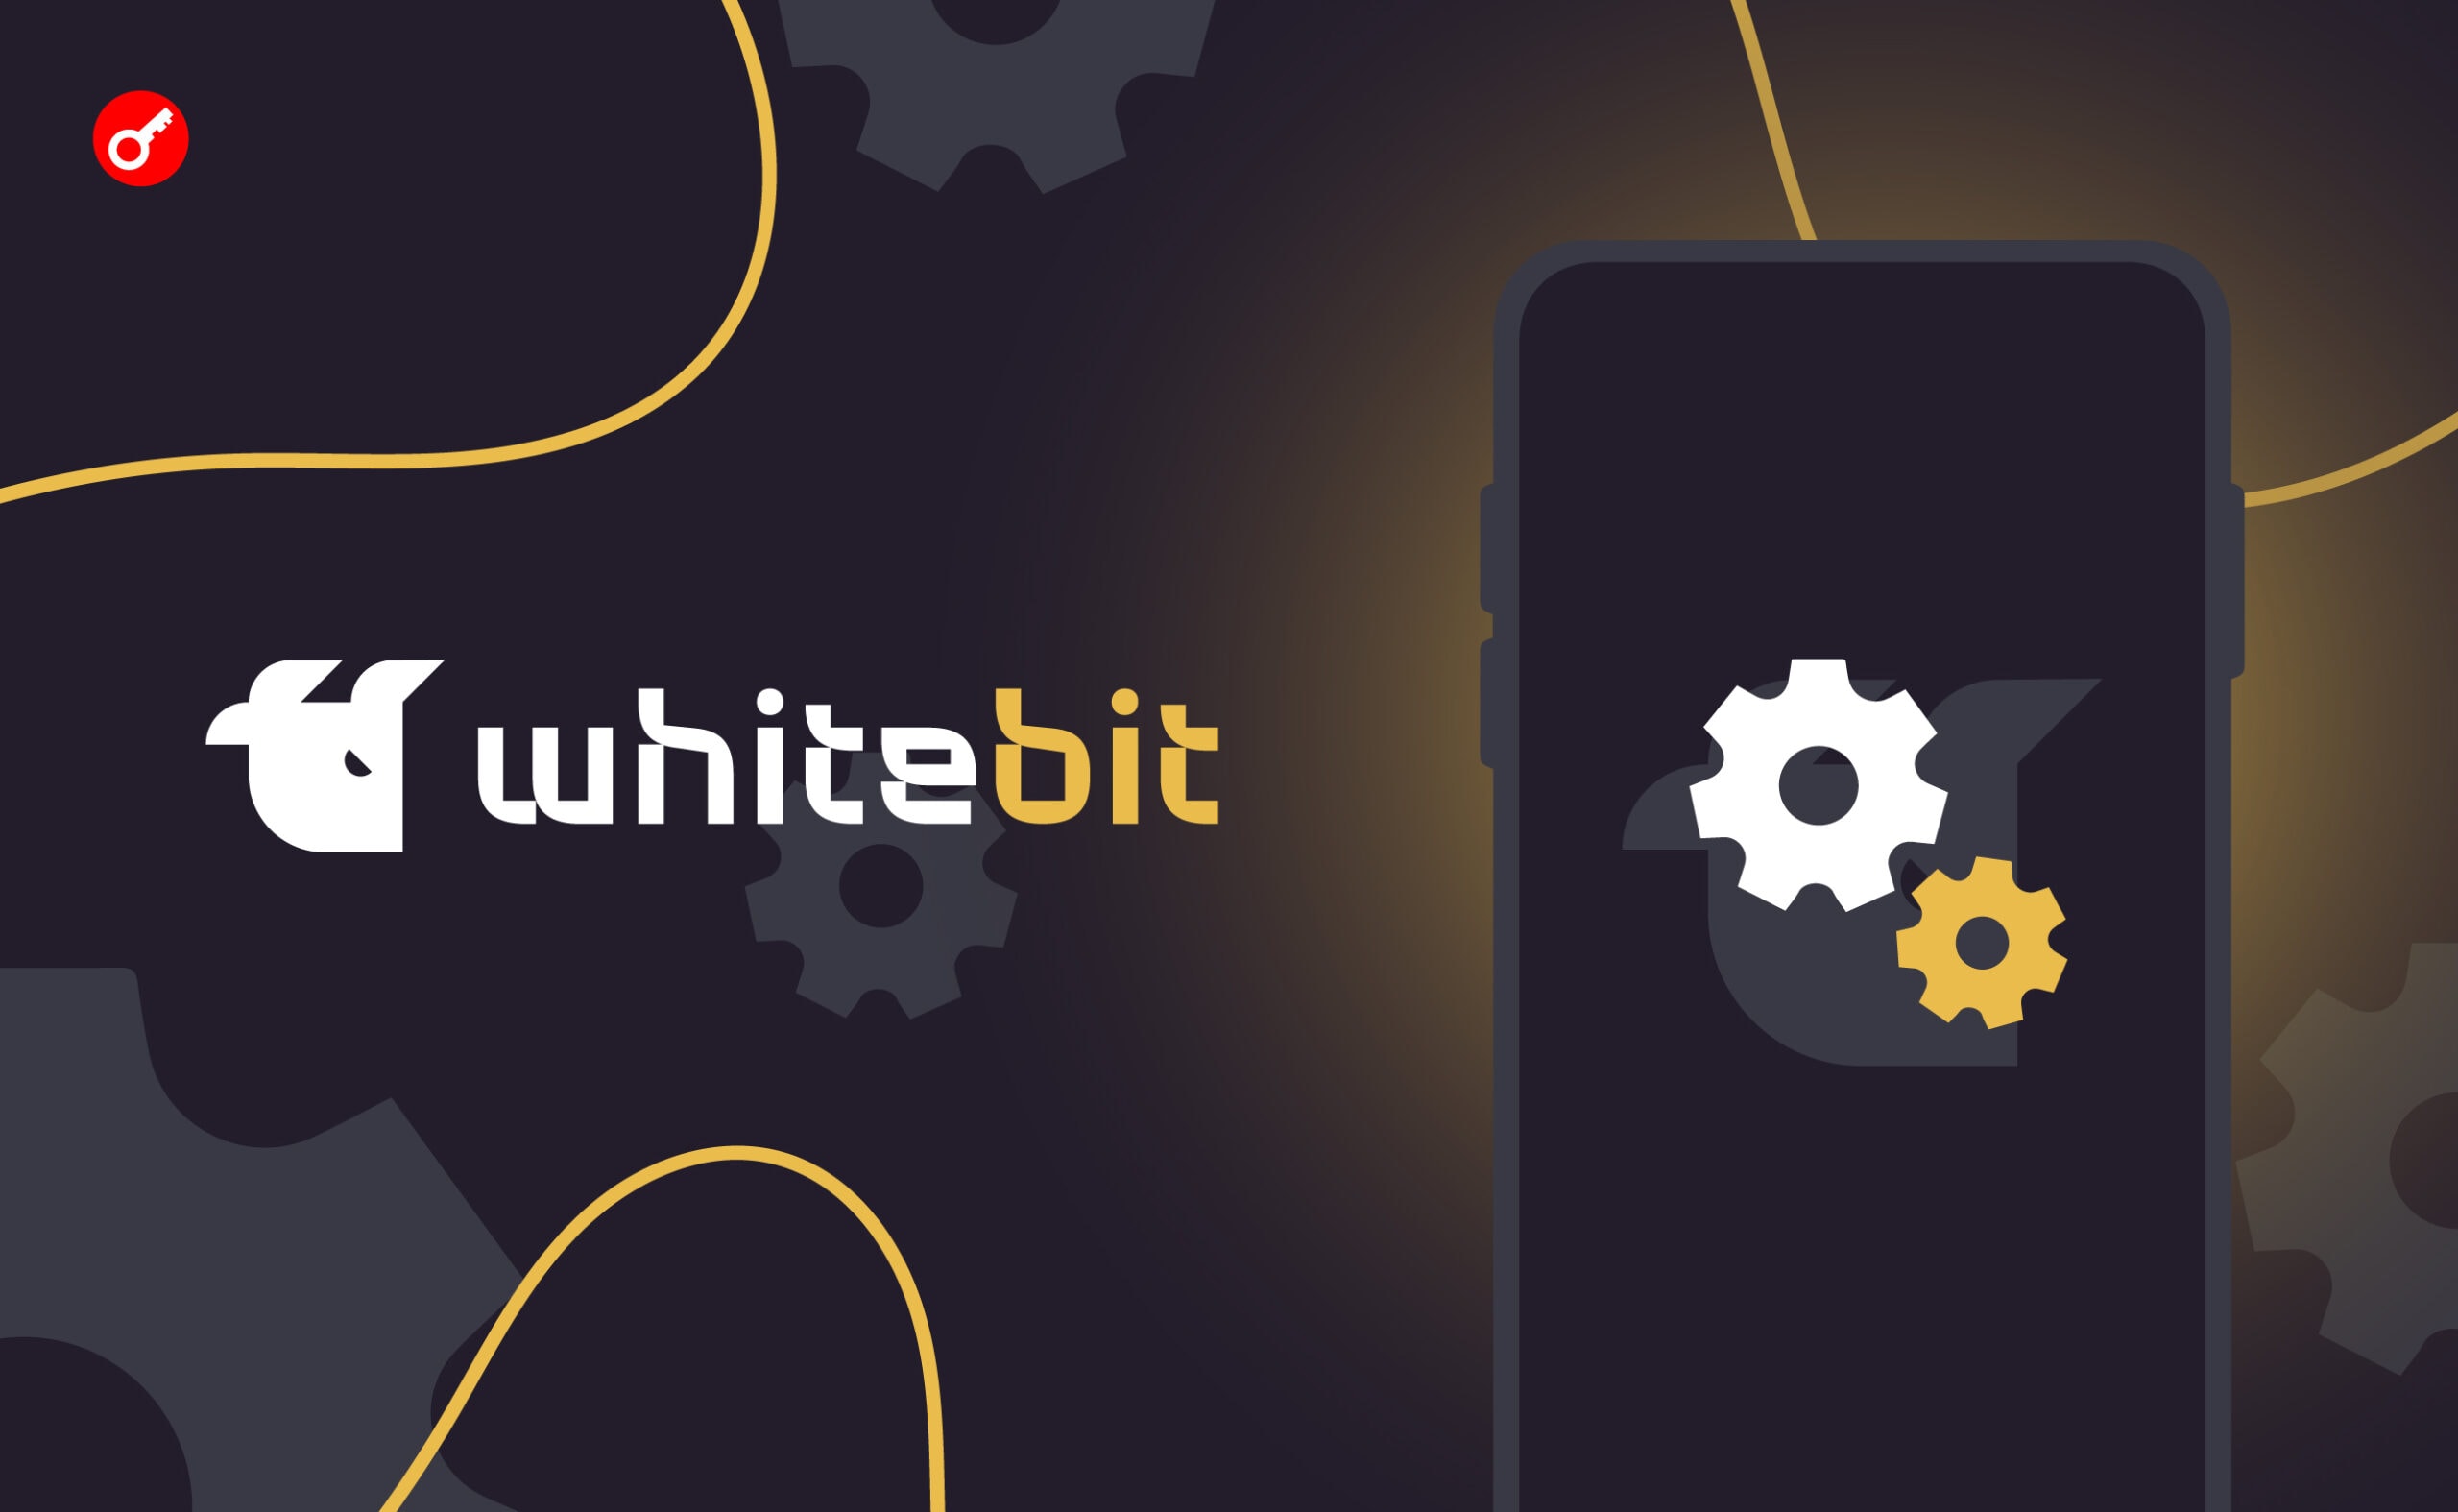 WhiteBIT Exchange ogłasza aktualizację aplikacji. Główny kolaż wiadomości.